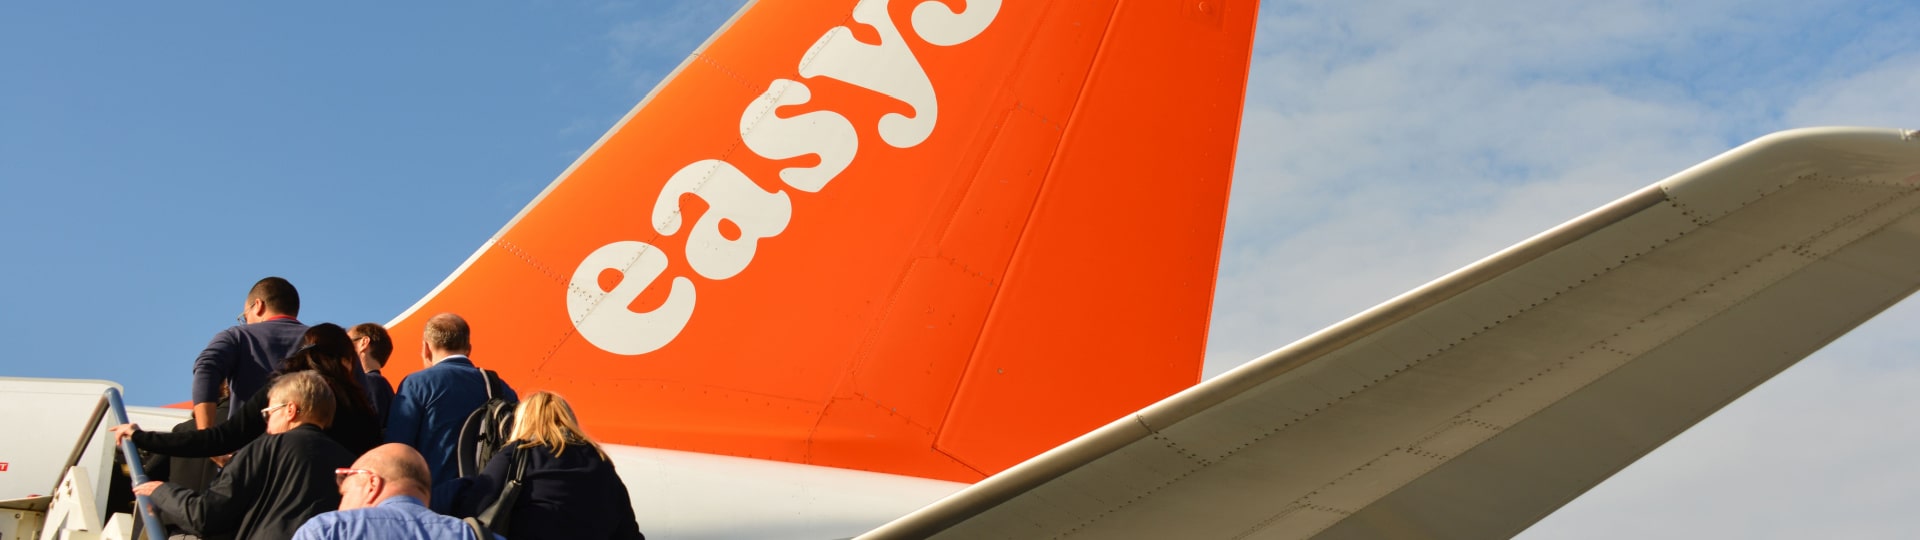 Britské nízkonákladové aerolinky easyJet se vrátily k celoročnímu zisku